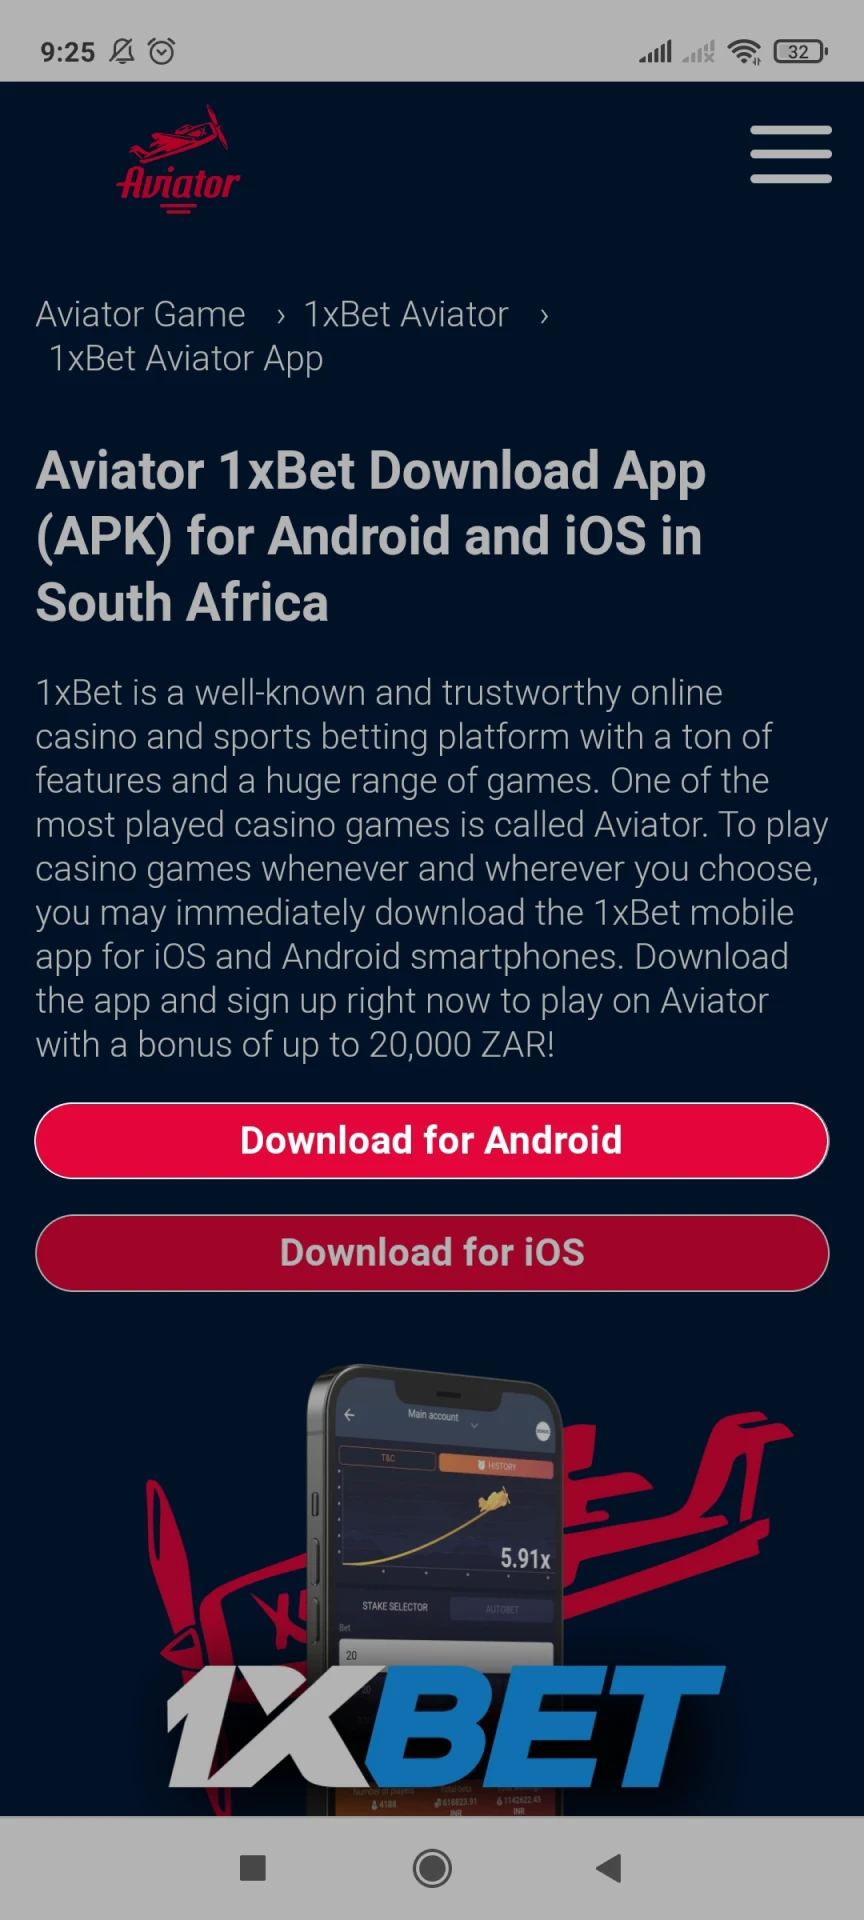 اتبع الرابط لتنزيل تطبيق 1xbet على نظام Android.